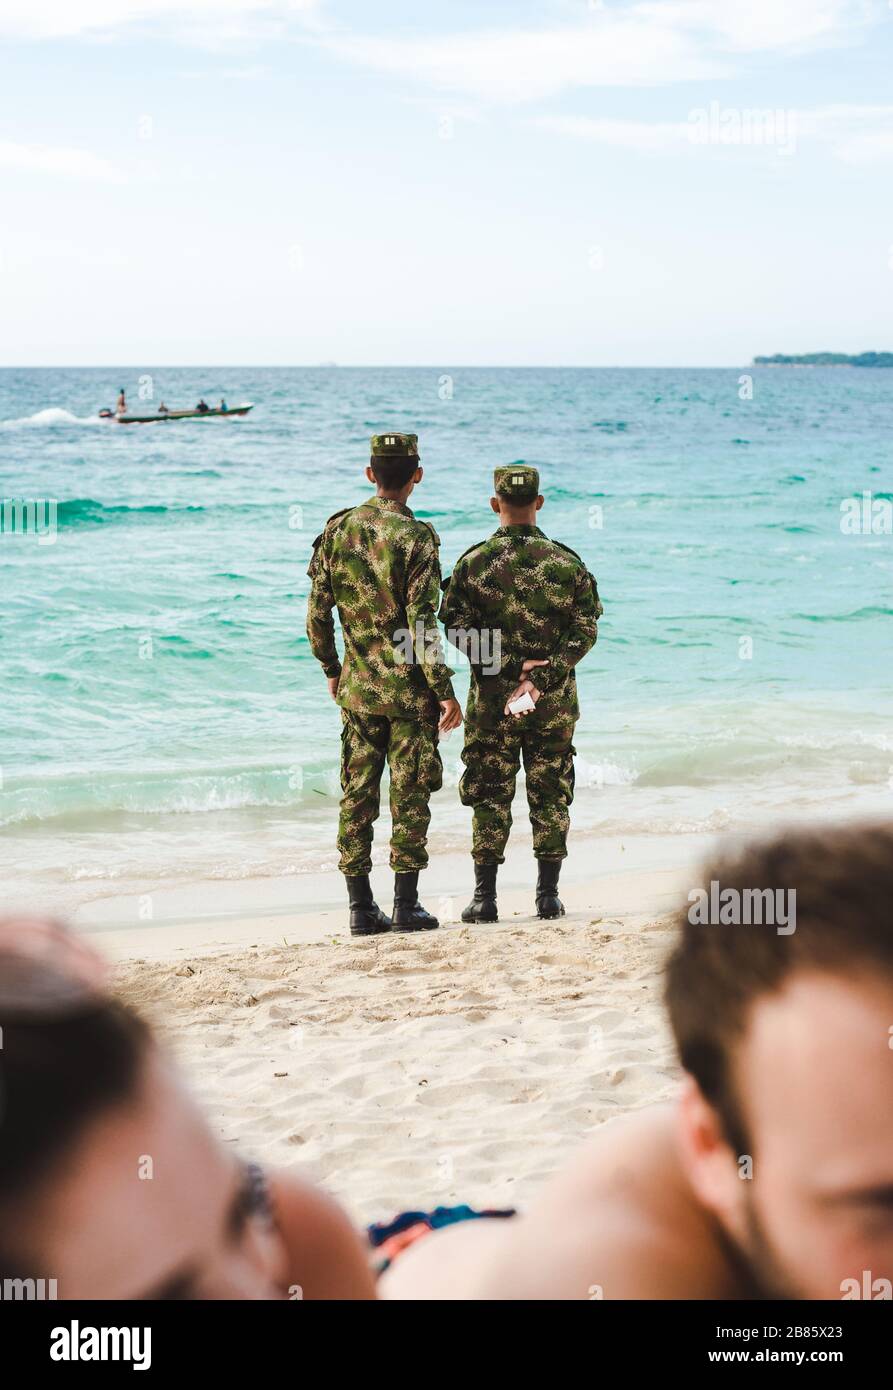 Deux hommes de l'armée en uniforme de camouflage regardent des bateaux et patrouillent sur la plage d'Isla Baru, près de Carthagène, Colombie Banque D'Images